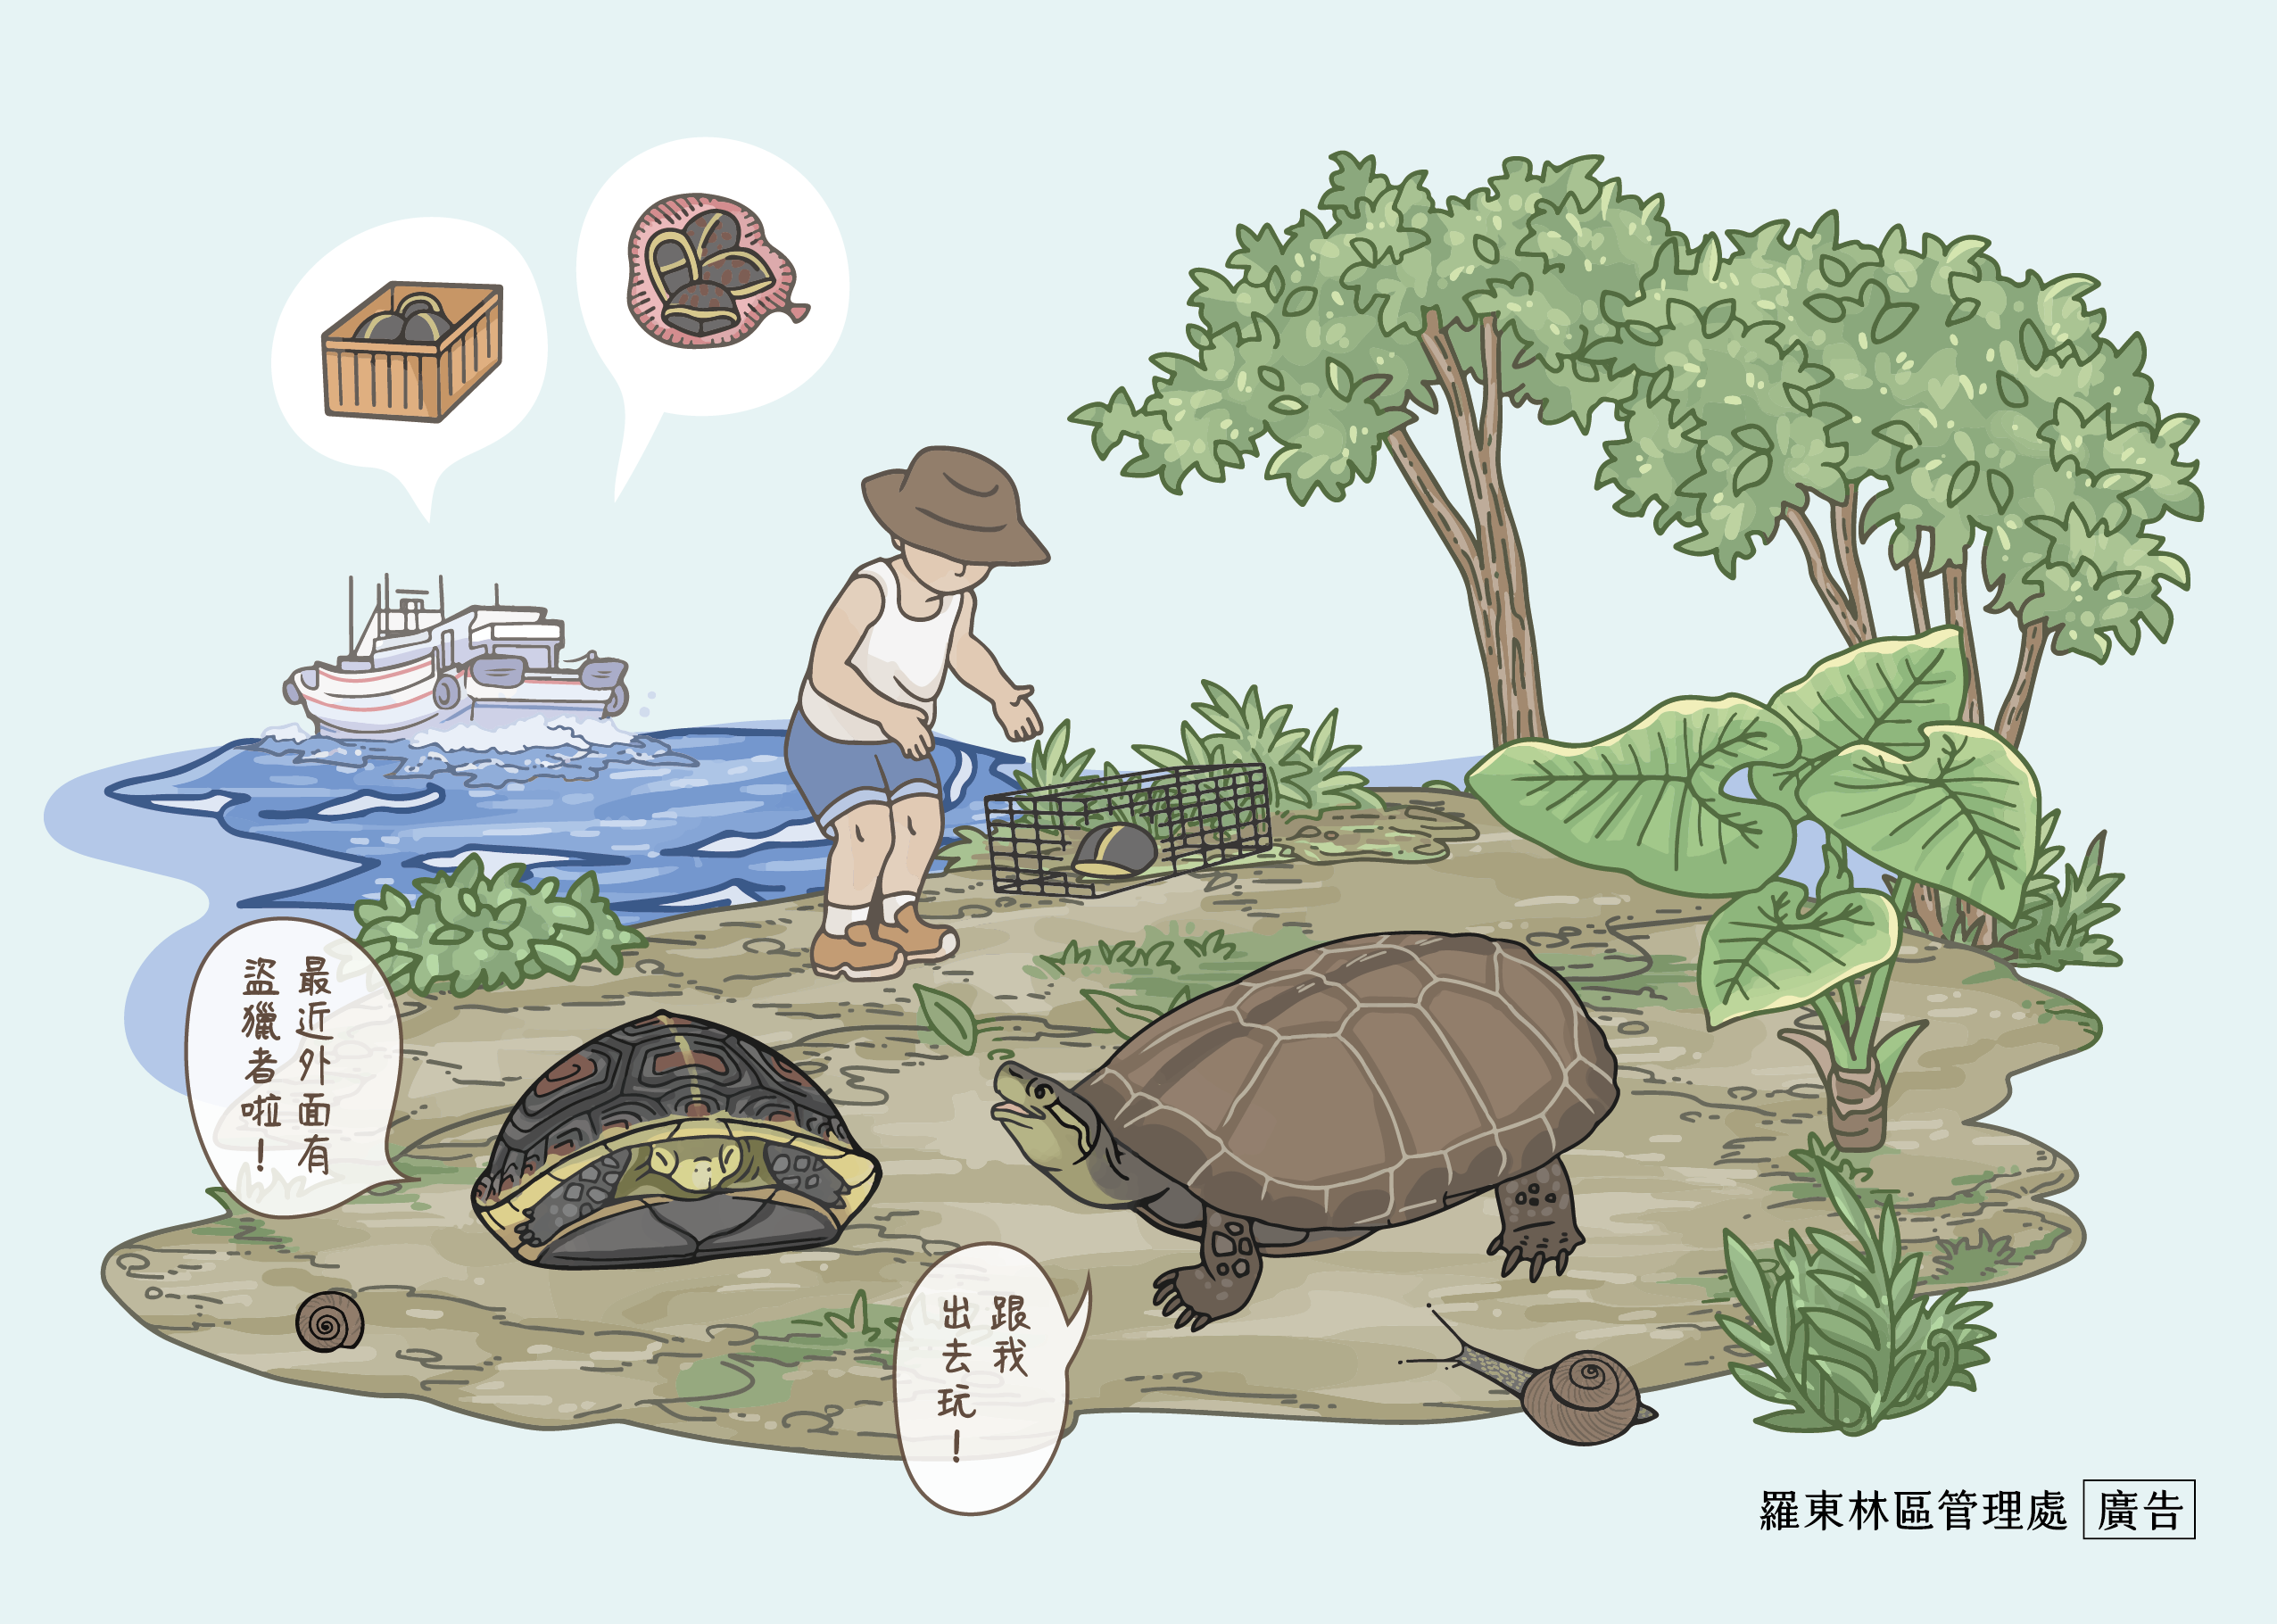 SOS！食蛇龜與柴棺龜碰上大麻煩了